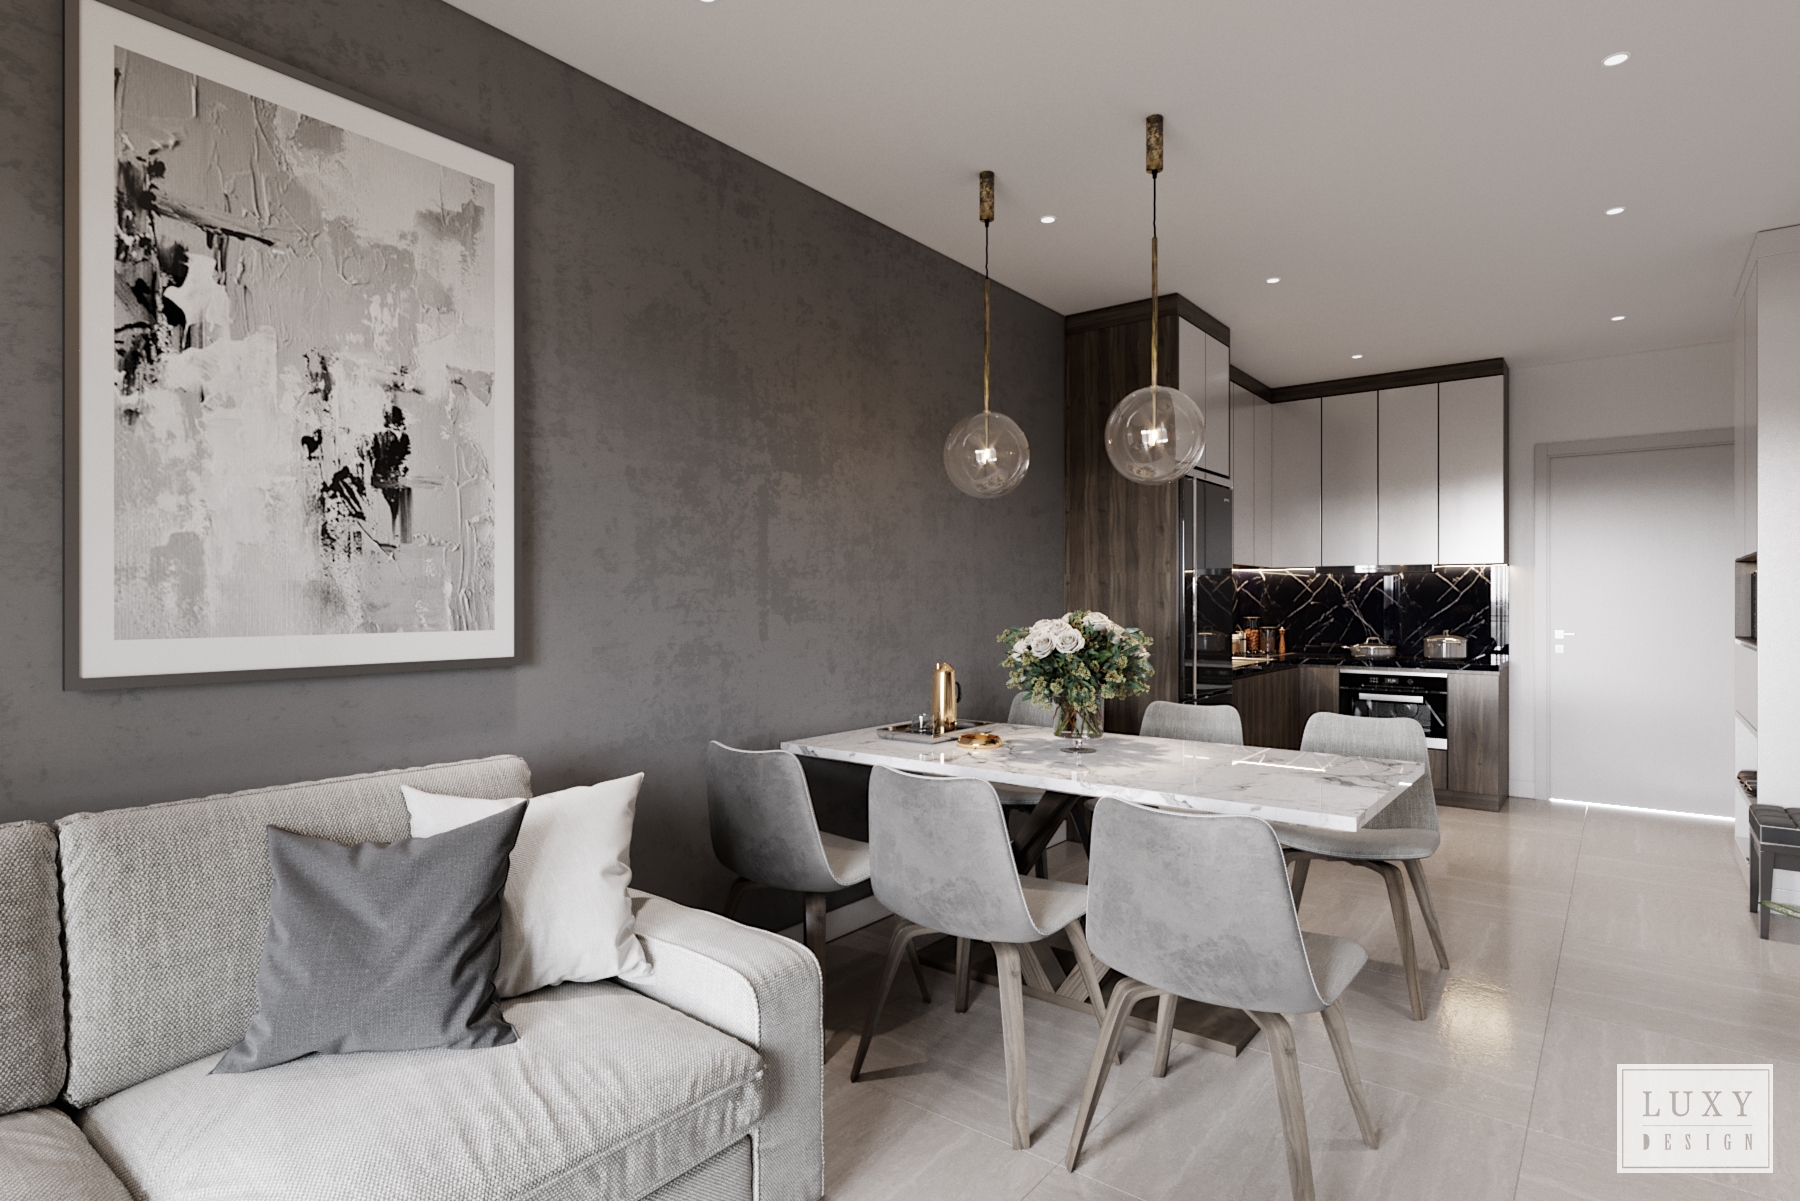 Luxy design tận dụng ánh sáng tự nhiên vào căn hộ một cách trọn vẹn nhất